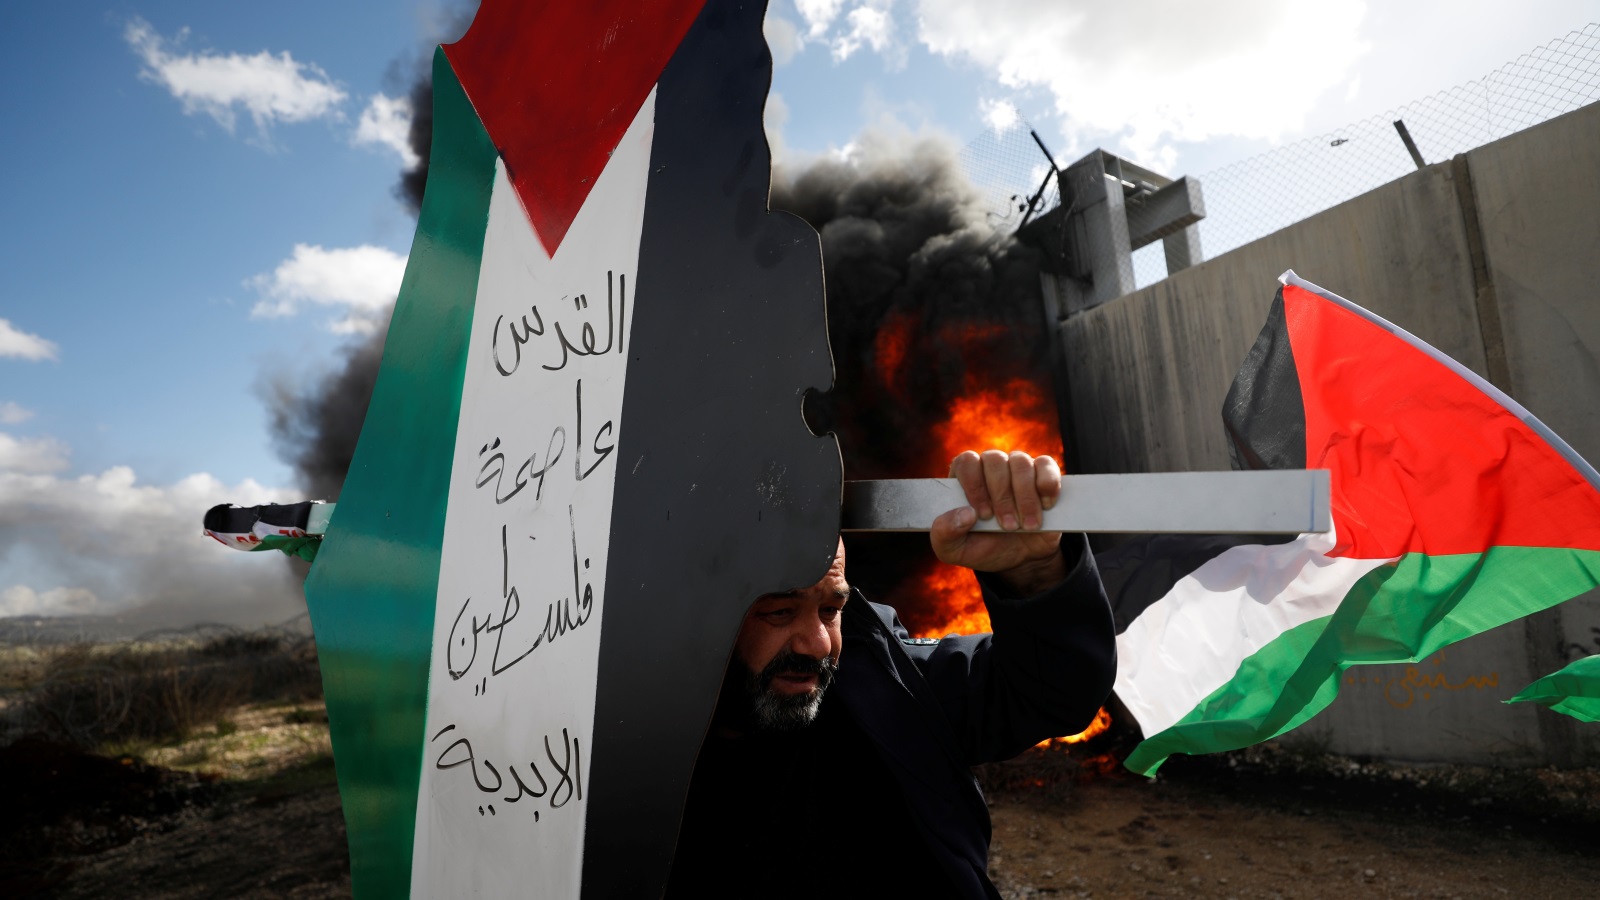 ‪فلسطيني يحمل لافتة تعبر عن التمسك بالقدس قرب جدار الفصل ببلدة بلعين في الضفة الغربية‬ (رويترز)